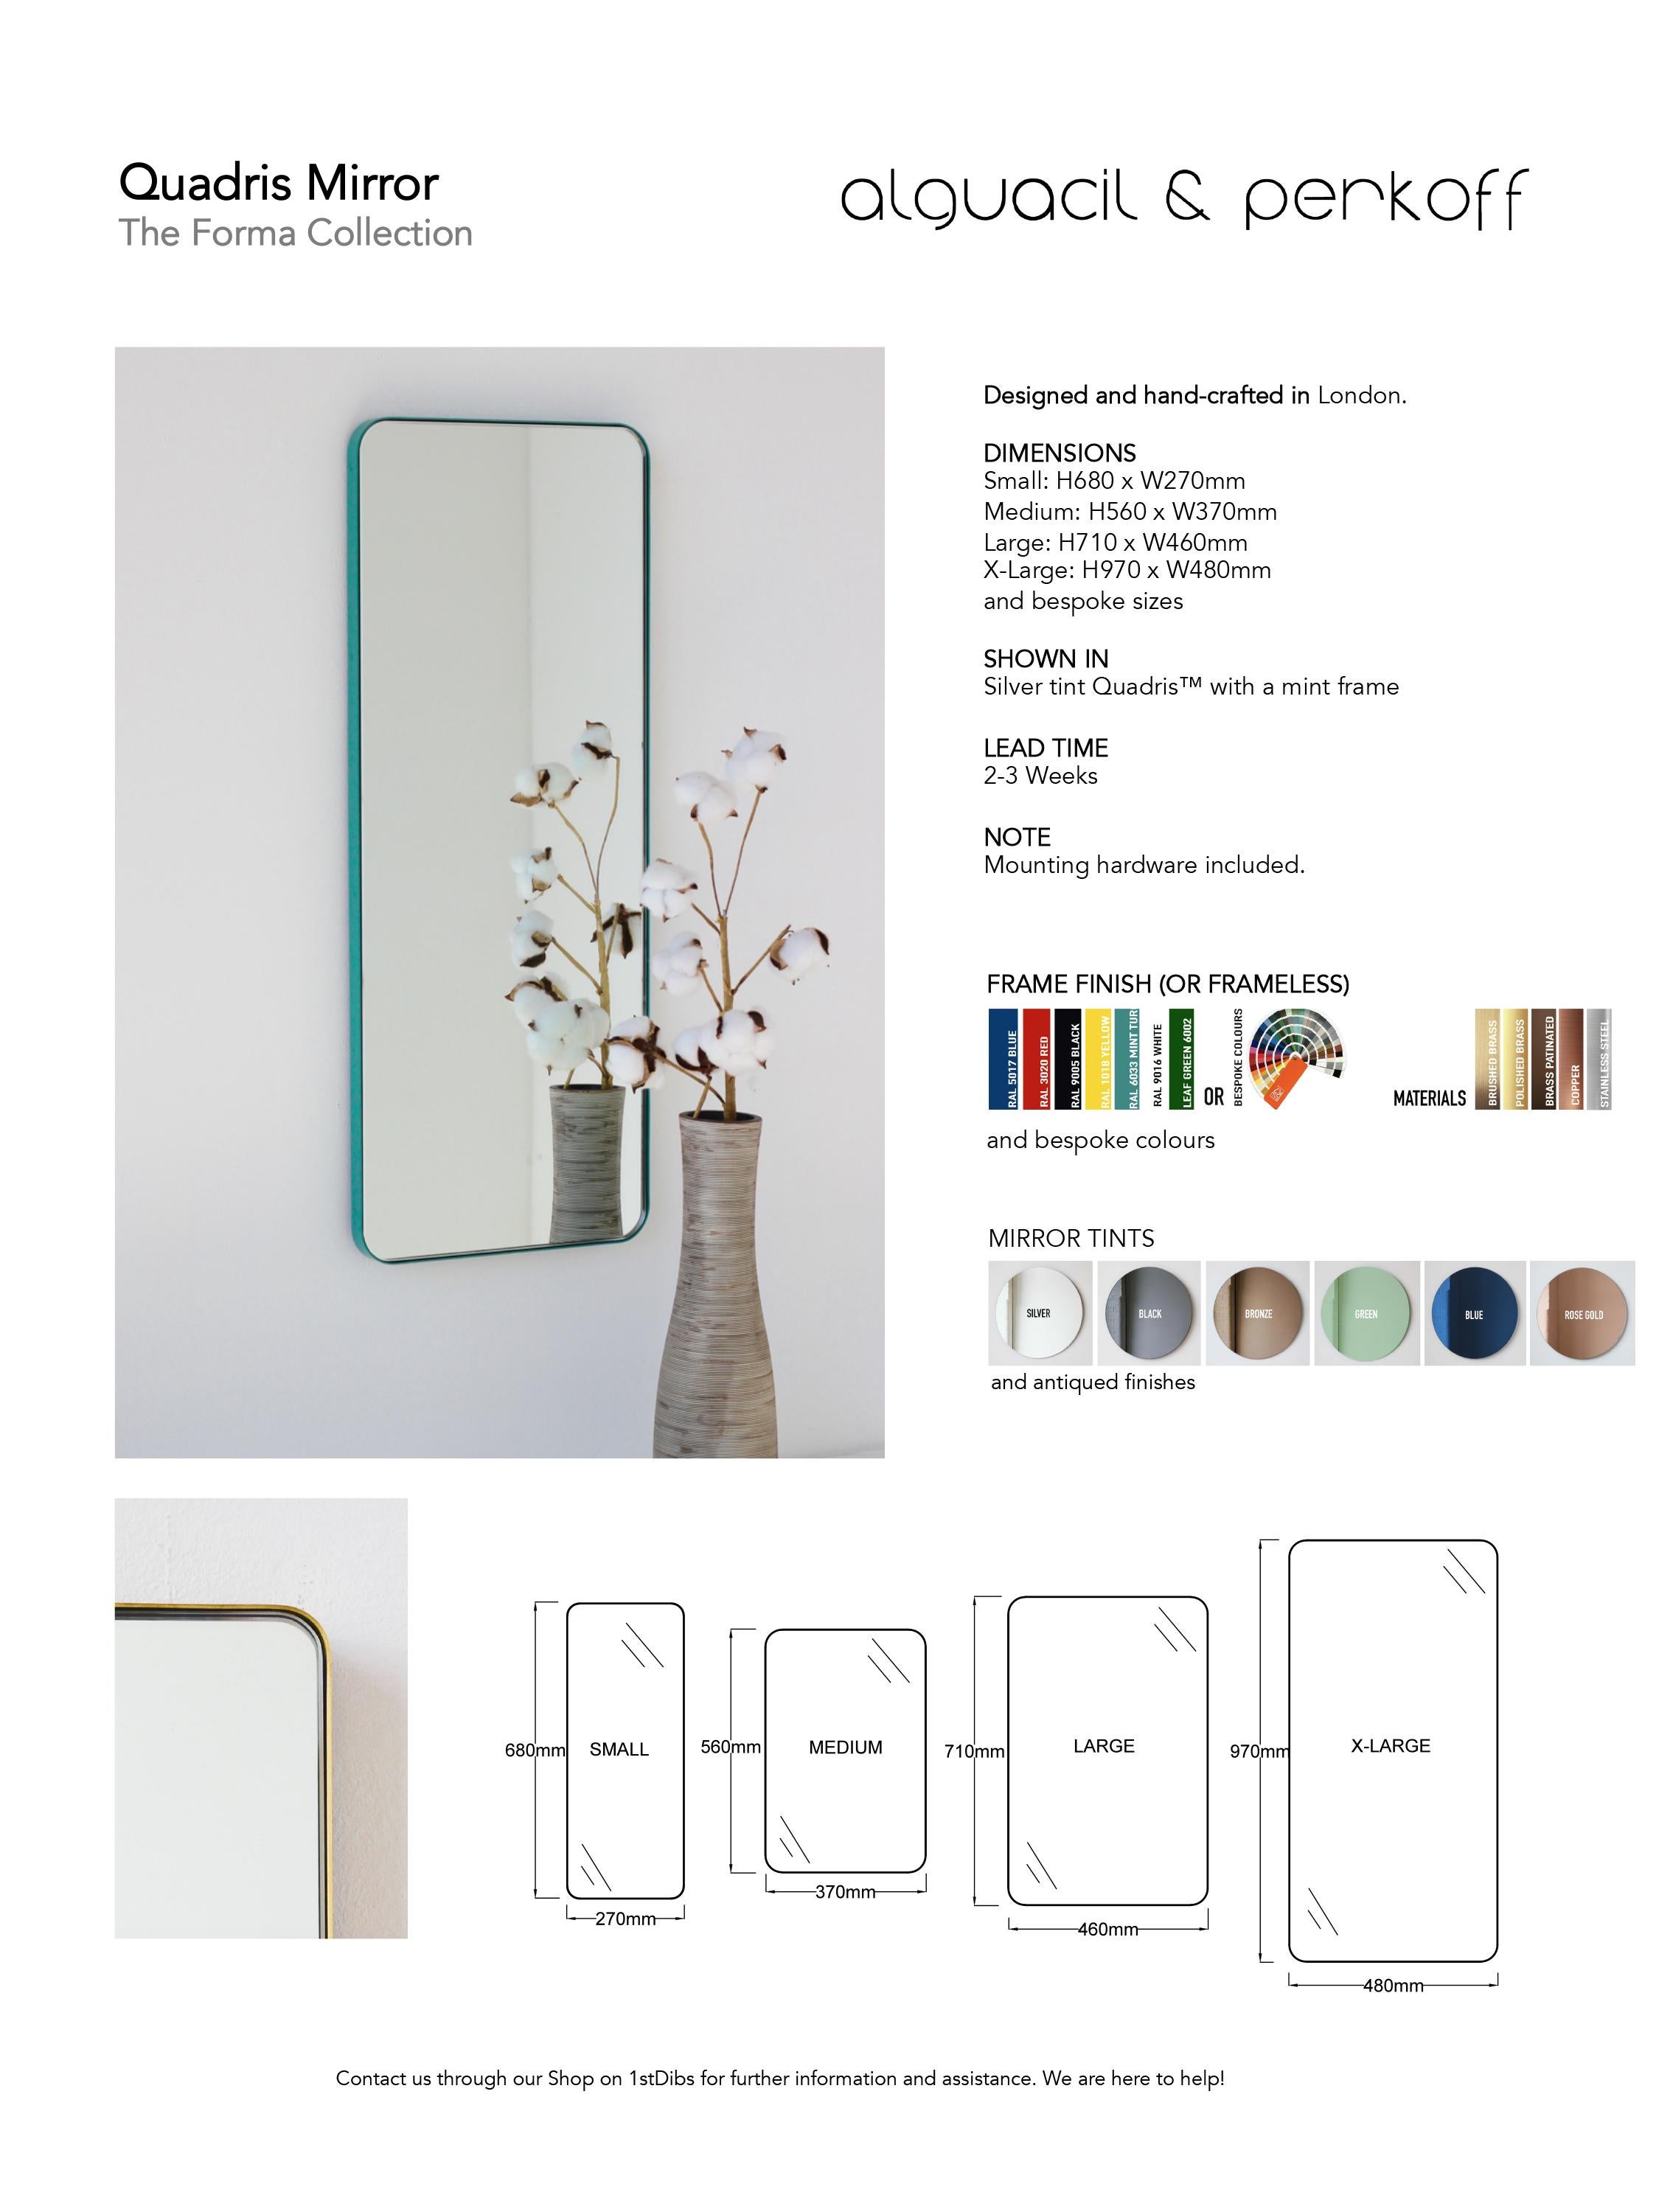 Quadris Rectangular Contemporary rahmenloser Spiegel mit Schwebeeffekt, XL im Angebot 4